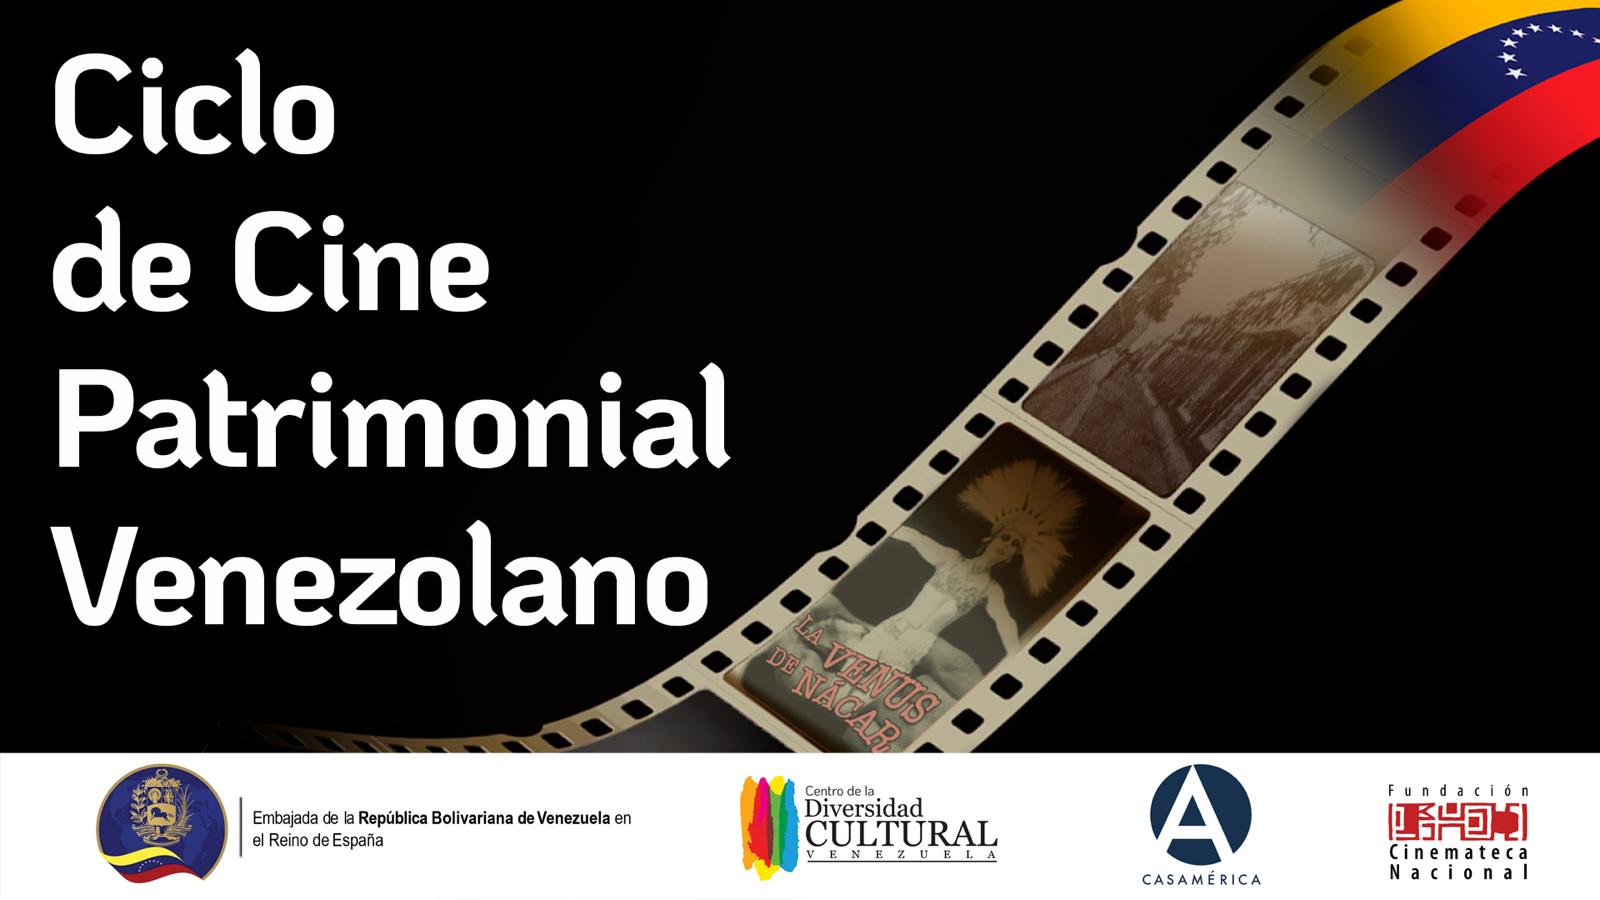 Embajada de Venezuela presenta ciclo de cine patrimonial en España